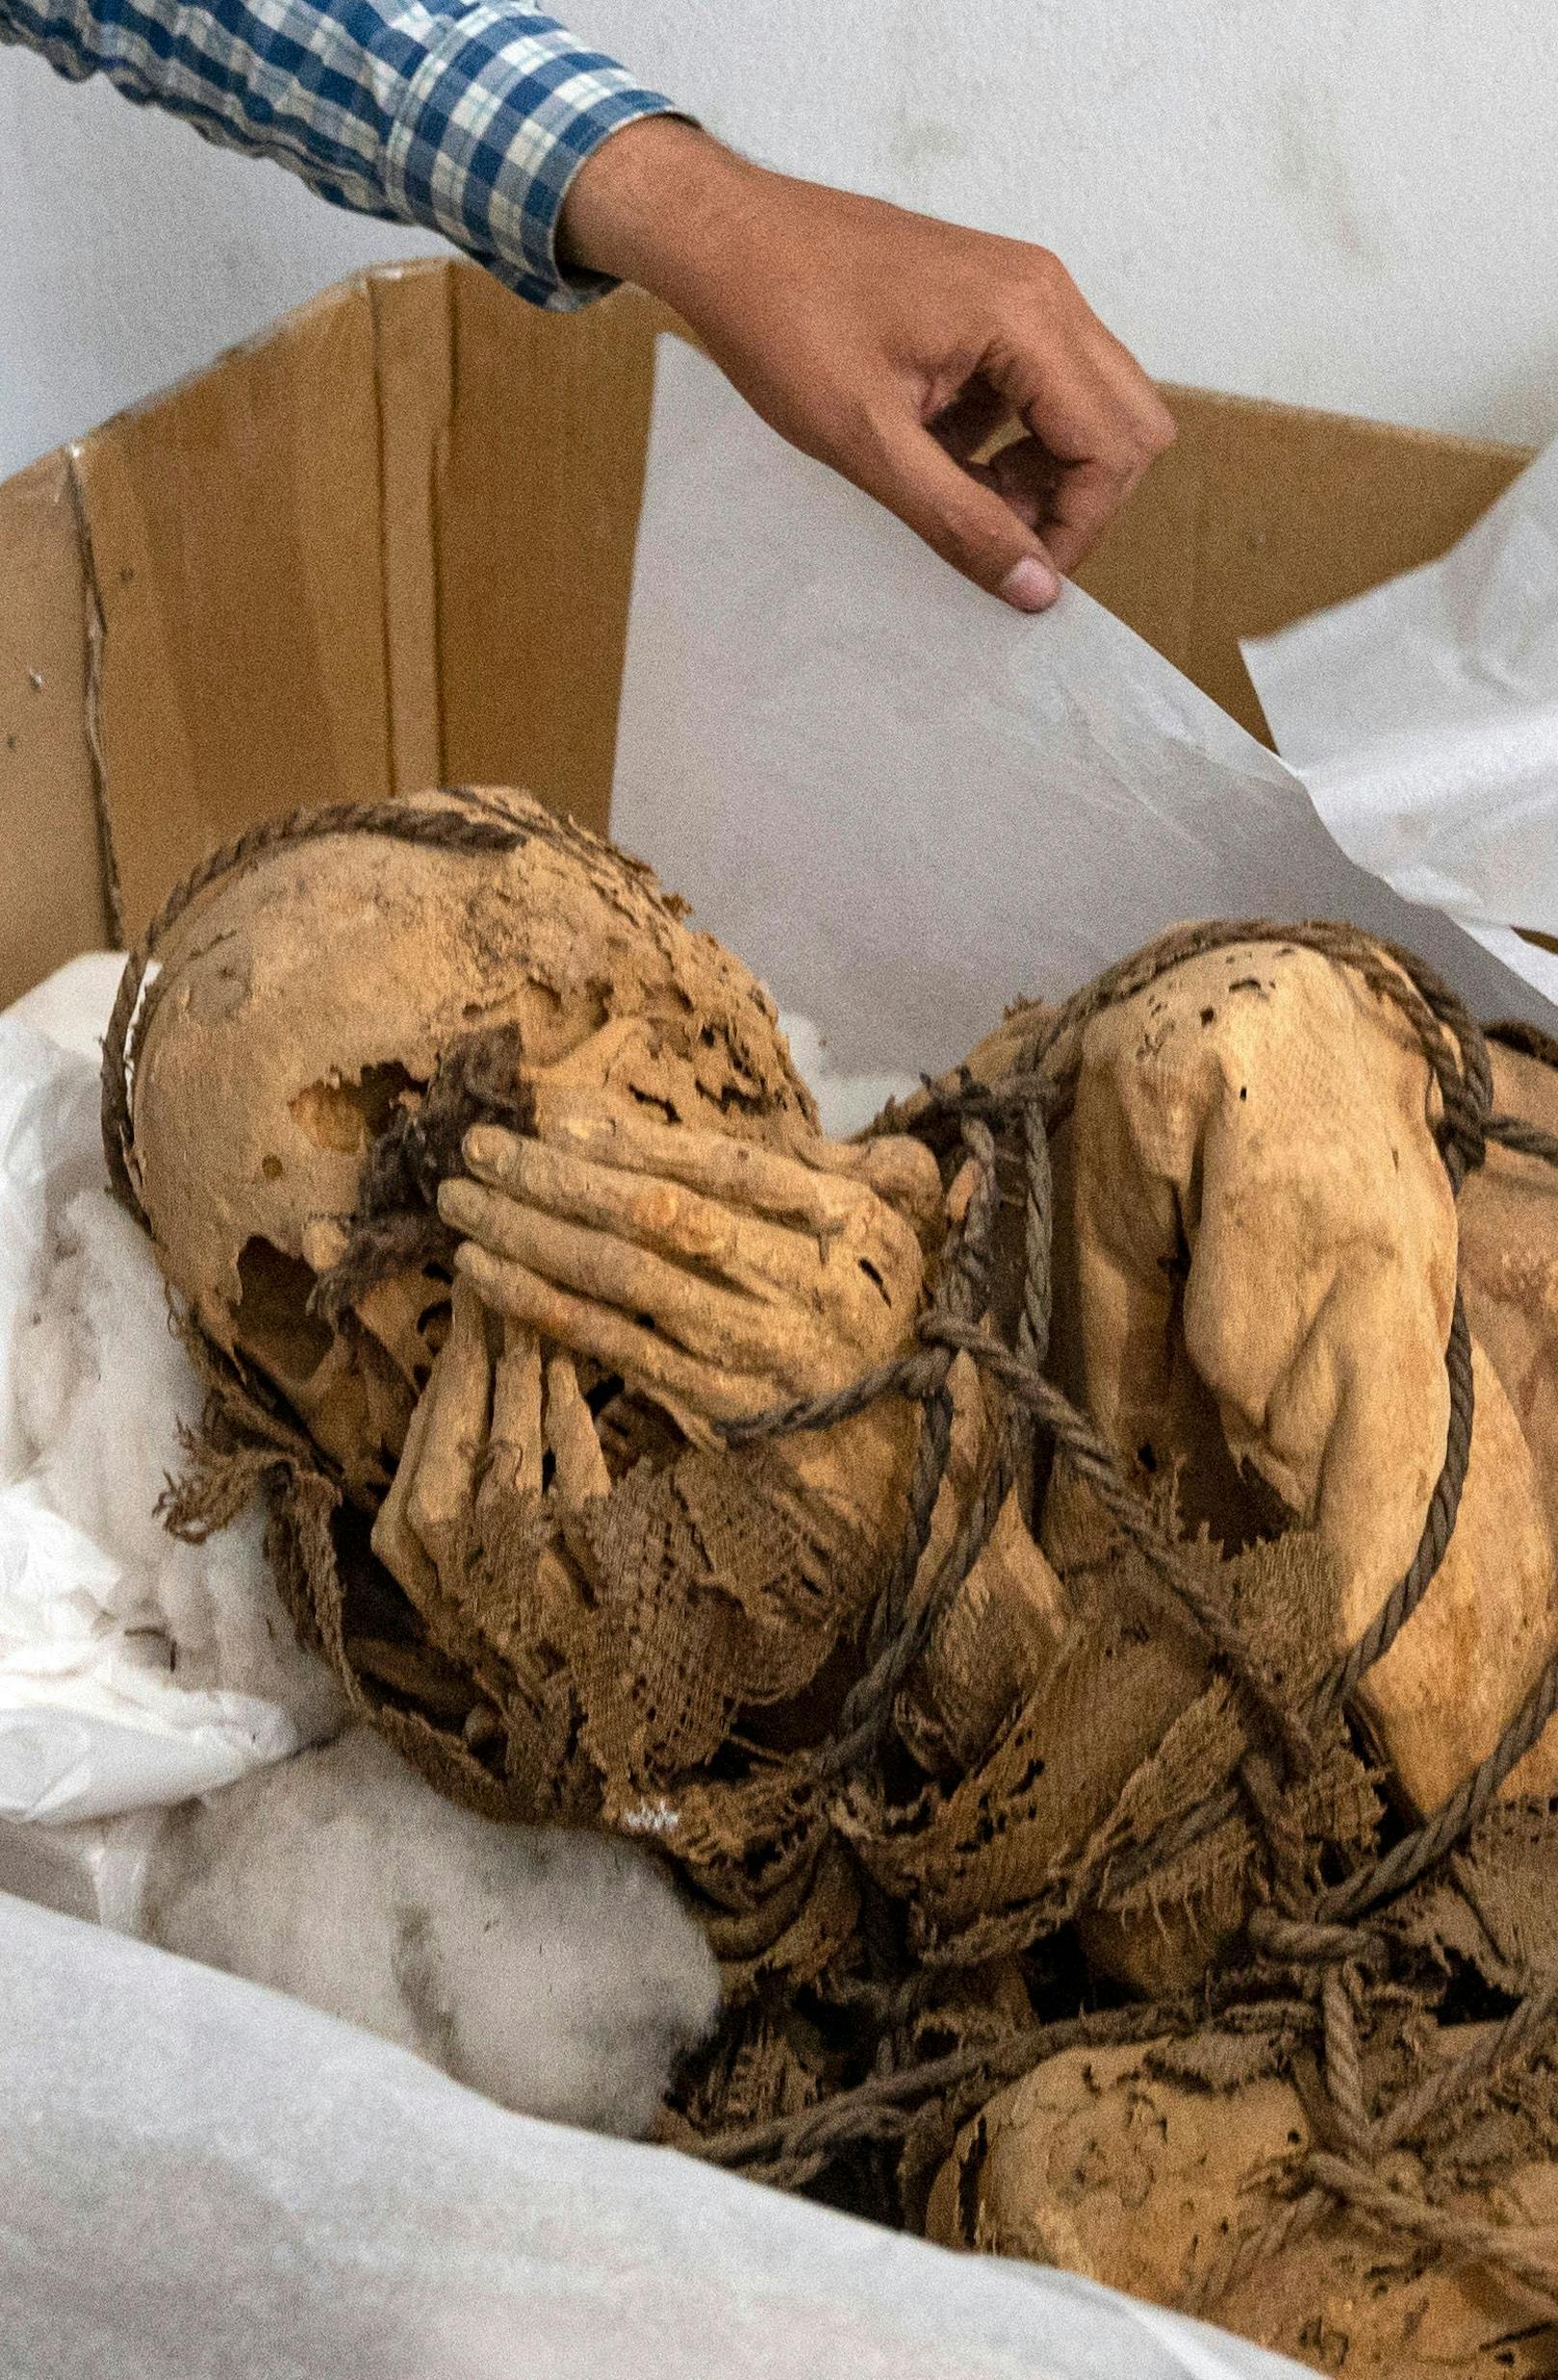 Forscher der Nationalen Universität von San Marcos fanden die konservierte Leiche eines jungen Mannes zwischen 25 und 30 Jahren, der mit Seilen gefesselt war und dessen Hände sein Gesicht bedeckten, was auf vorspanische Zeiten zurückgeht. 